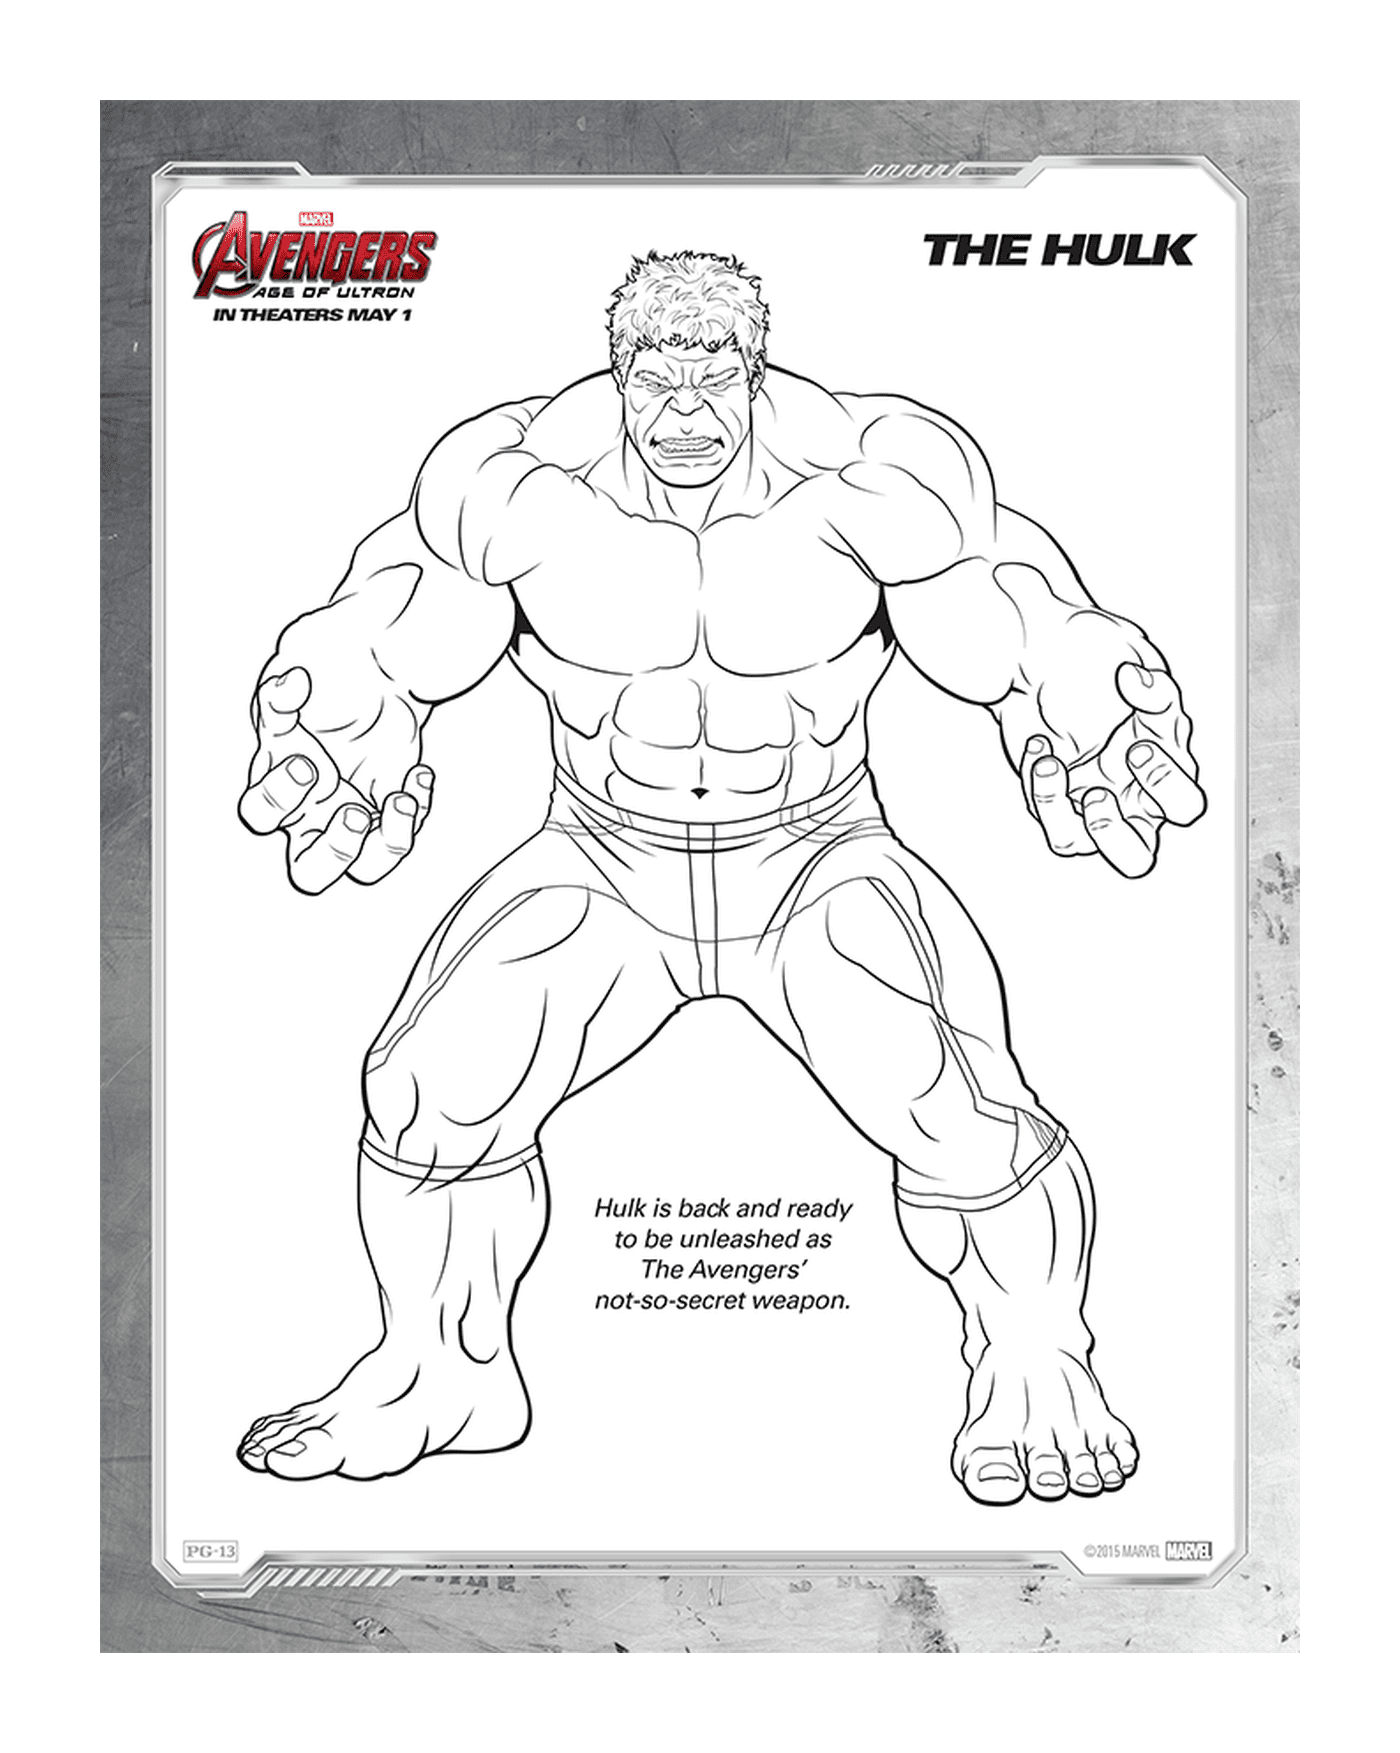  Immagine di un adulto, Hulk 